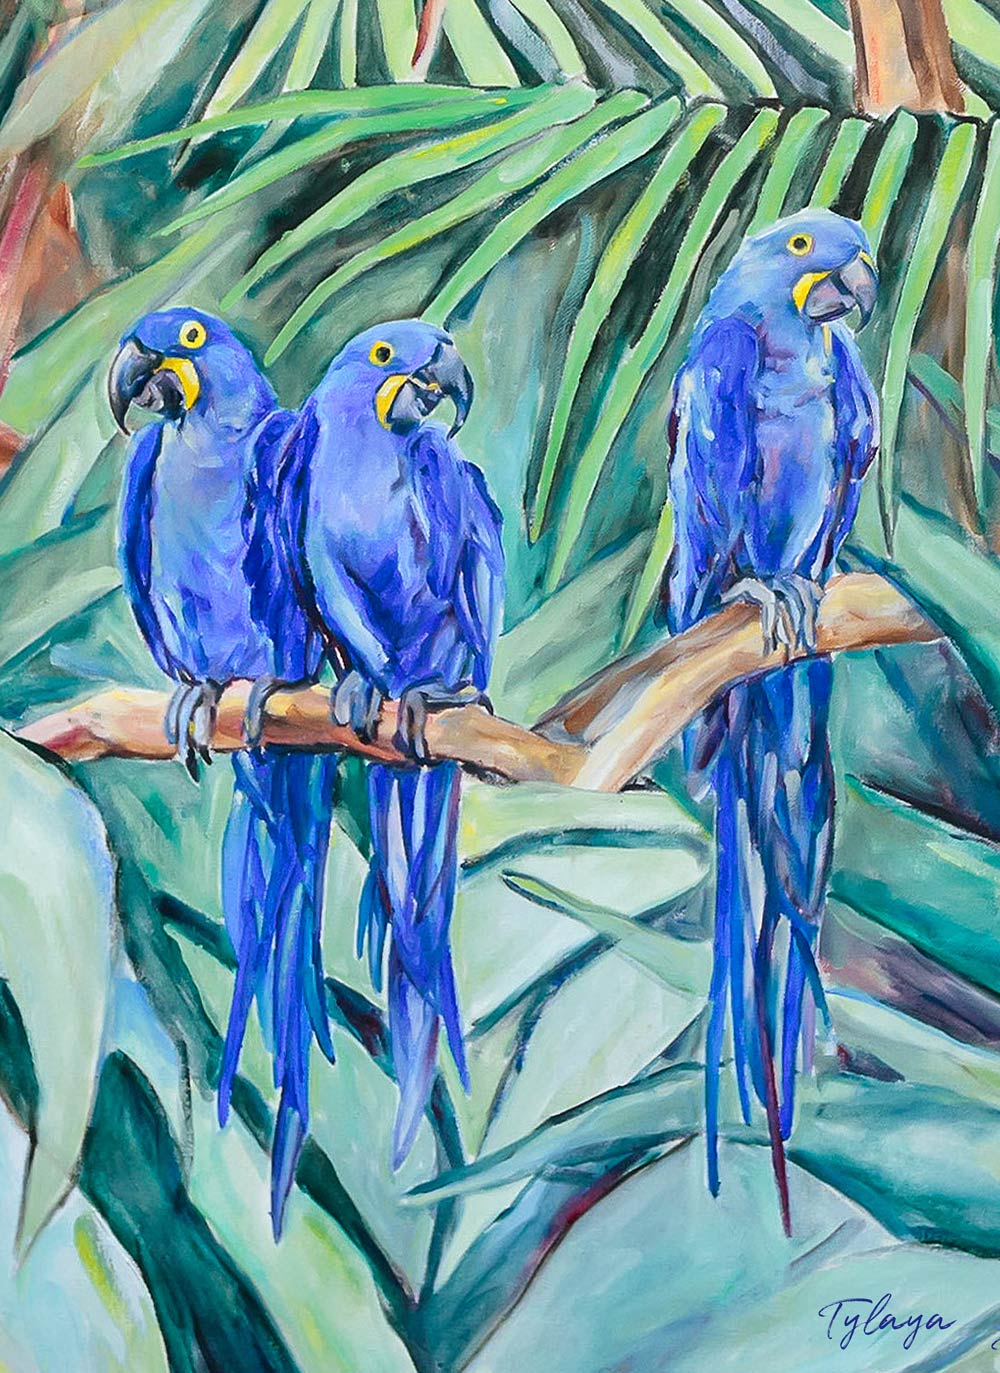 Tableau jungle et nature de la jungle avec ses oiseaux exotiques sauvages représentant un trio de perroquets Ara Hyacinthes bleus cobalt sur fond de feuilles de palmiers dans une déco bohème, jungalow et moderne